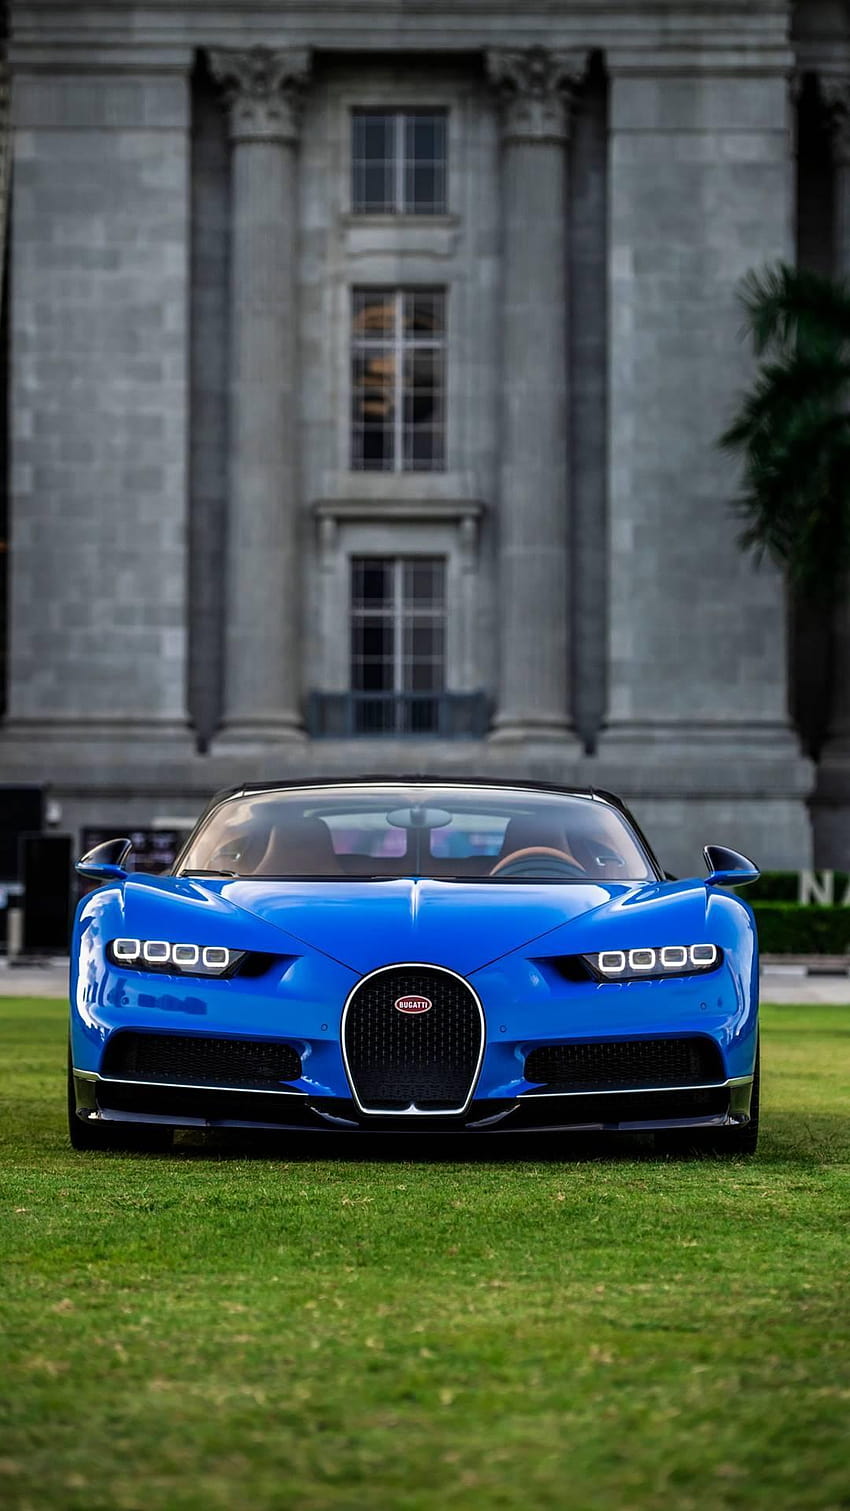 Supercar Bugatti for Android, bugatti smartphone HD phone wallpaper | Pxfuel